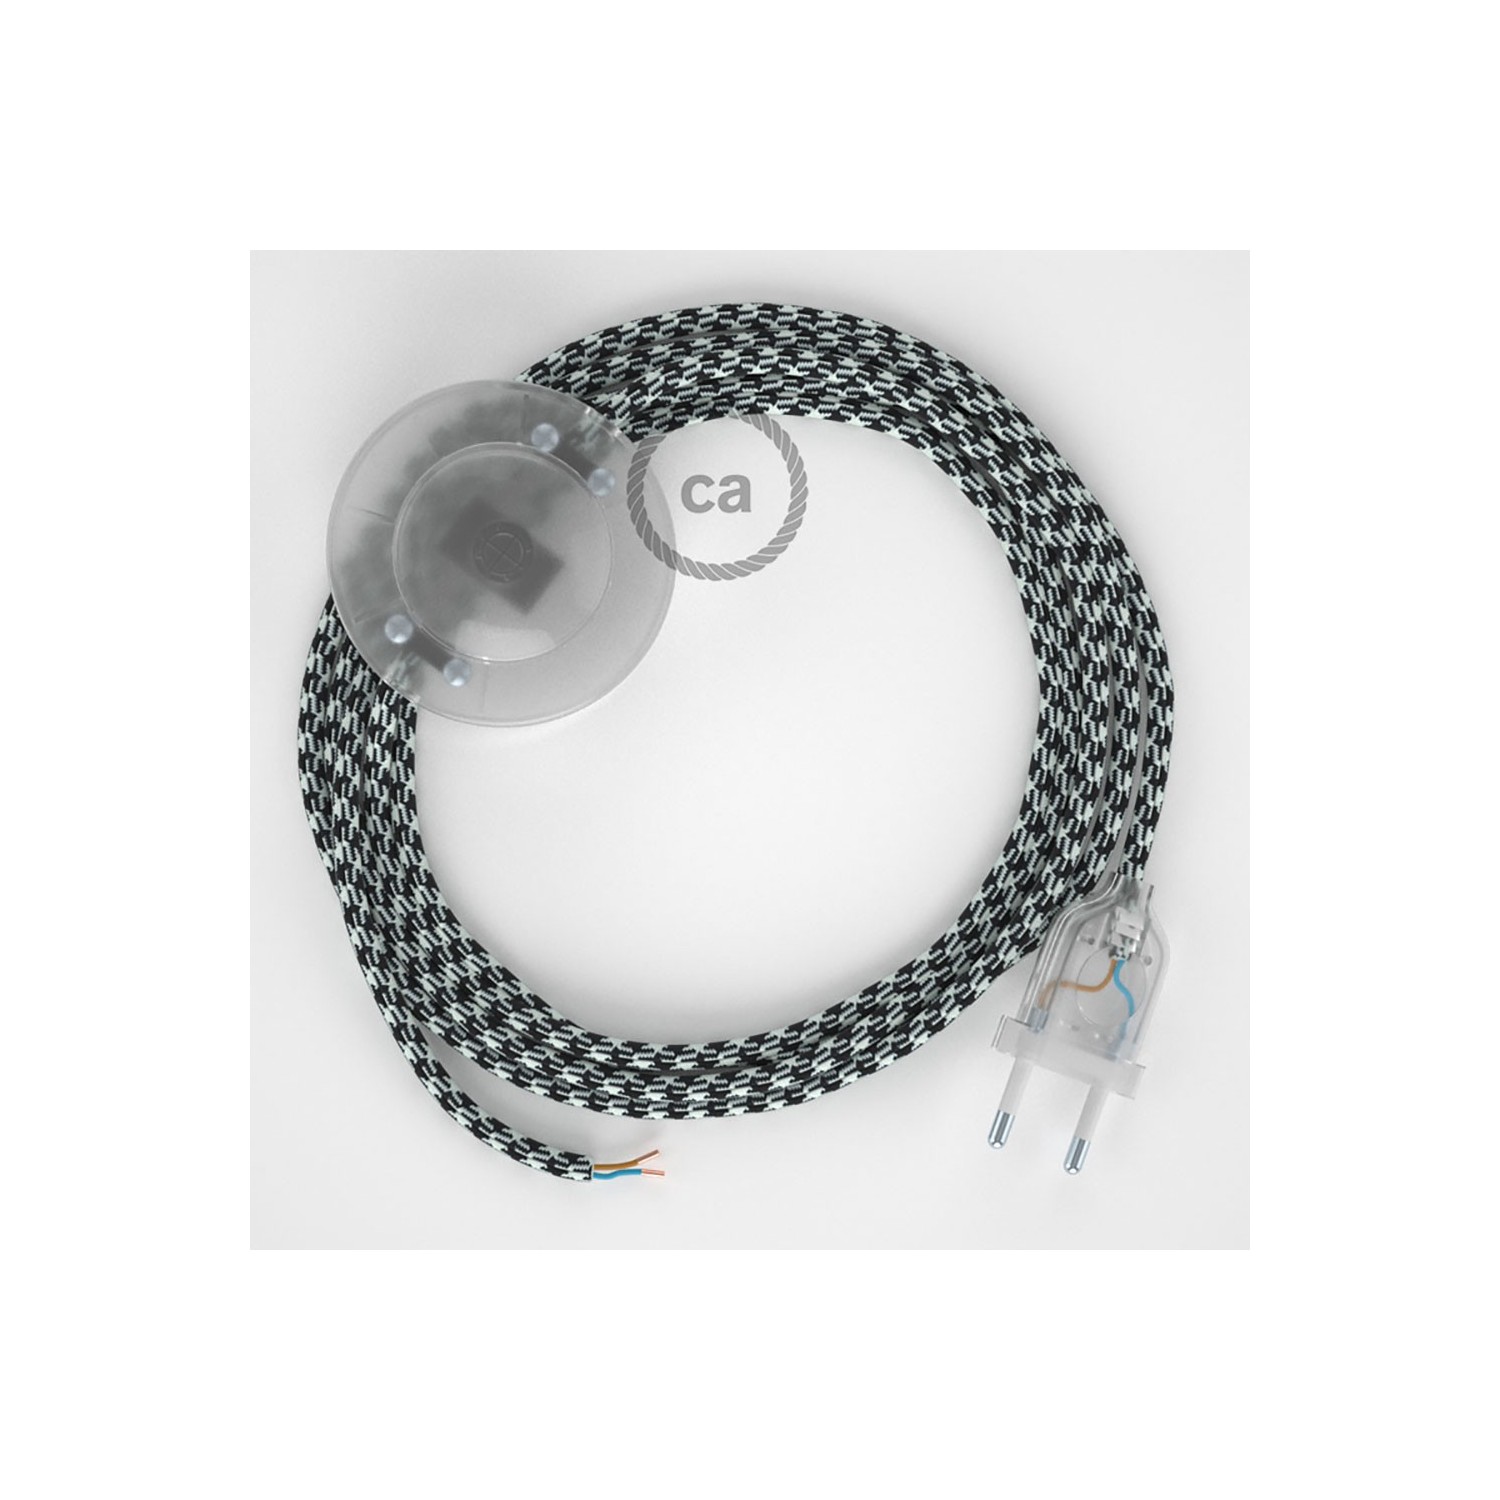 Stehleuchte Anschlussleitung RP04 Bifarbig Weiß Schwarz Seideneffekt 3 m. Wählen Sie aus drei Farben bei Schalter und Stecke.